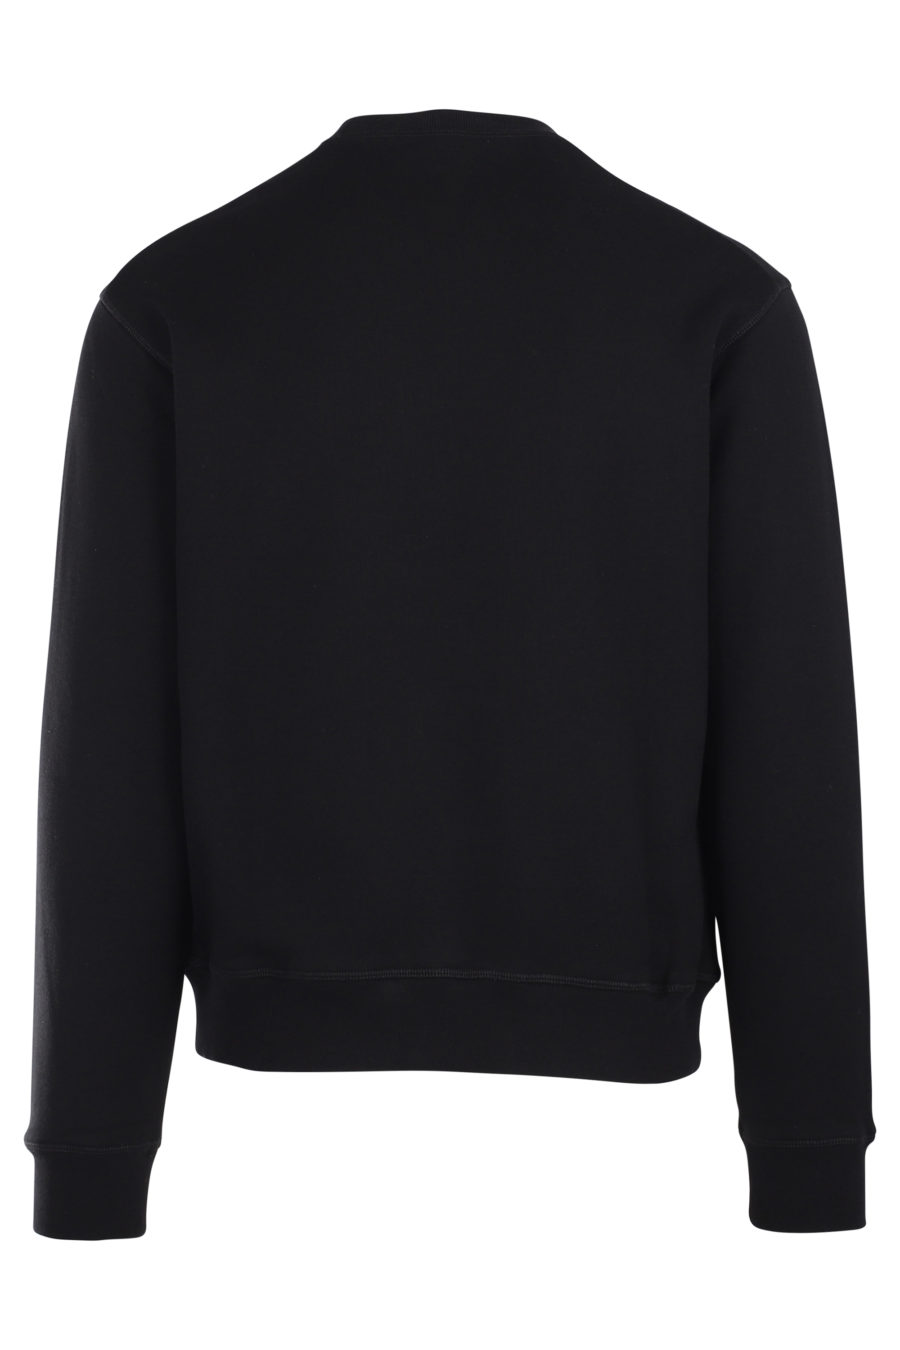 Black sweatshirt with large logo ceresio 9 - IMG 9879